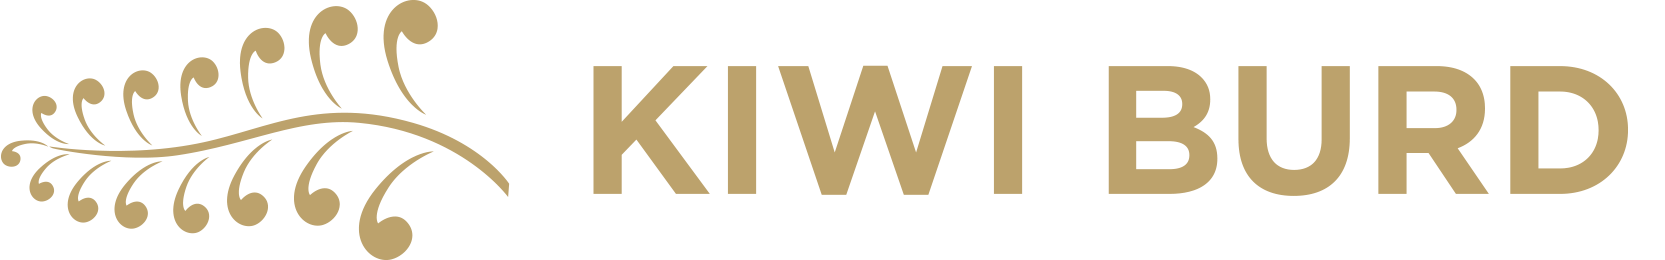 Kiwi Burd